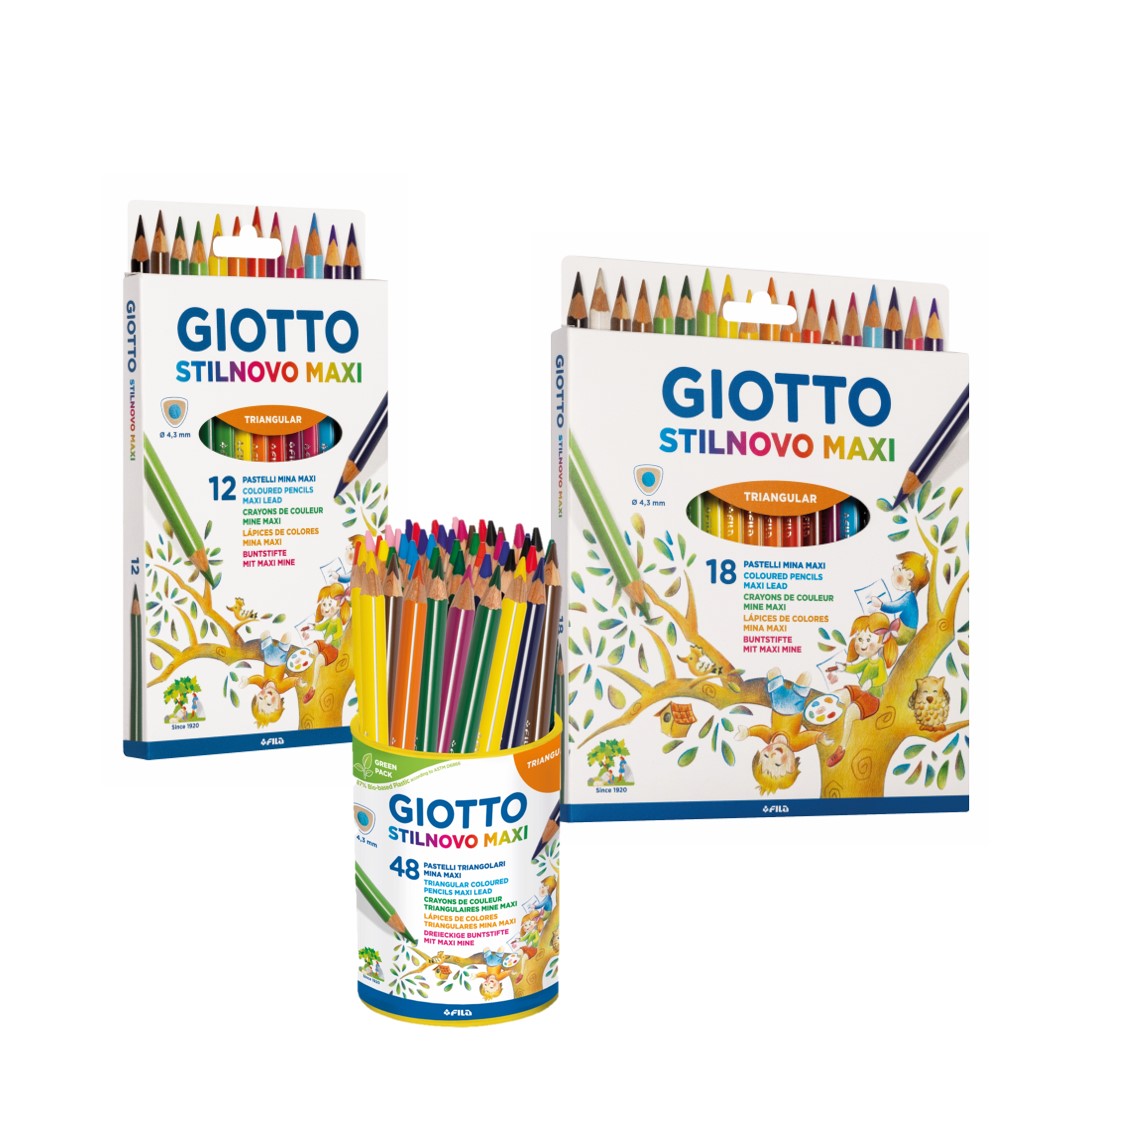 Giotto stilnovo intense colours colouring pencils, 192 pencils, schoolpack